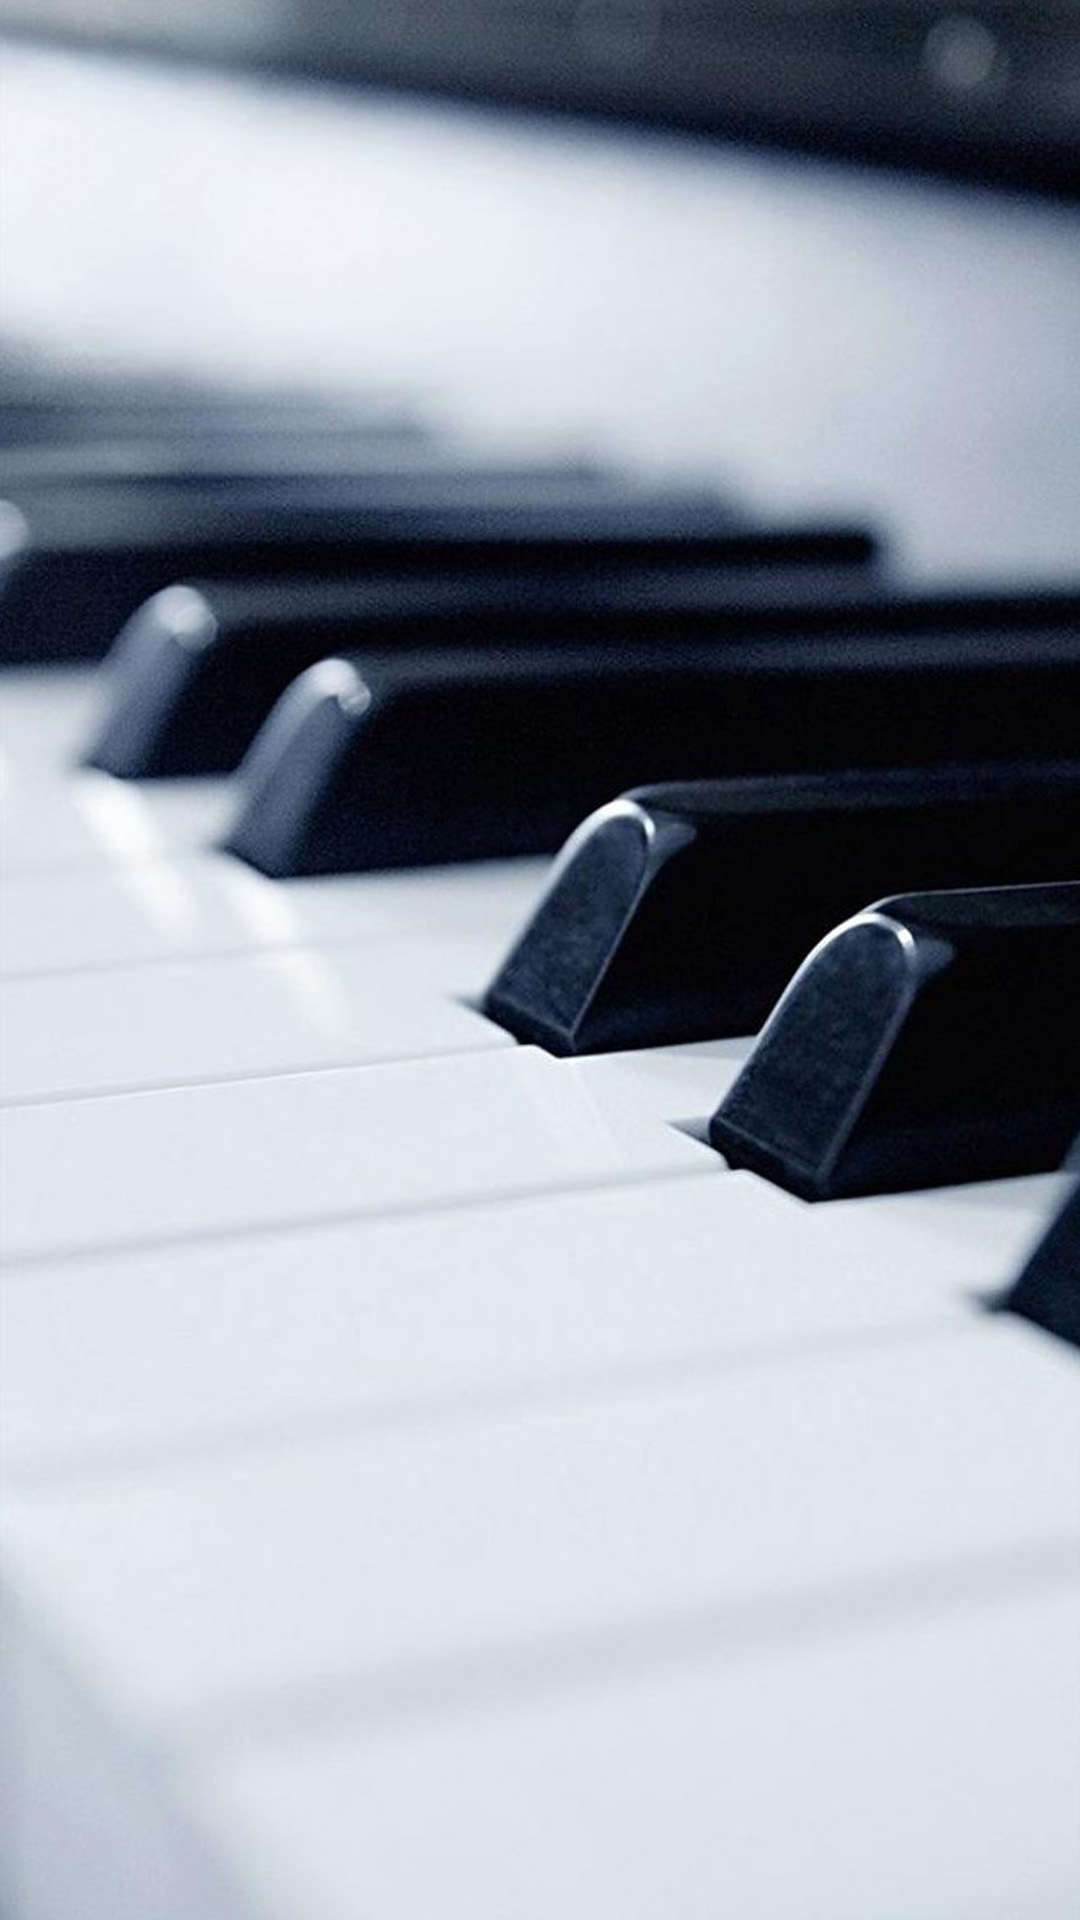 sfondi musicali hd per android,pianoforte,tastiera,strumento musicale,piano elettrico,tastiera musicale